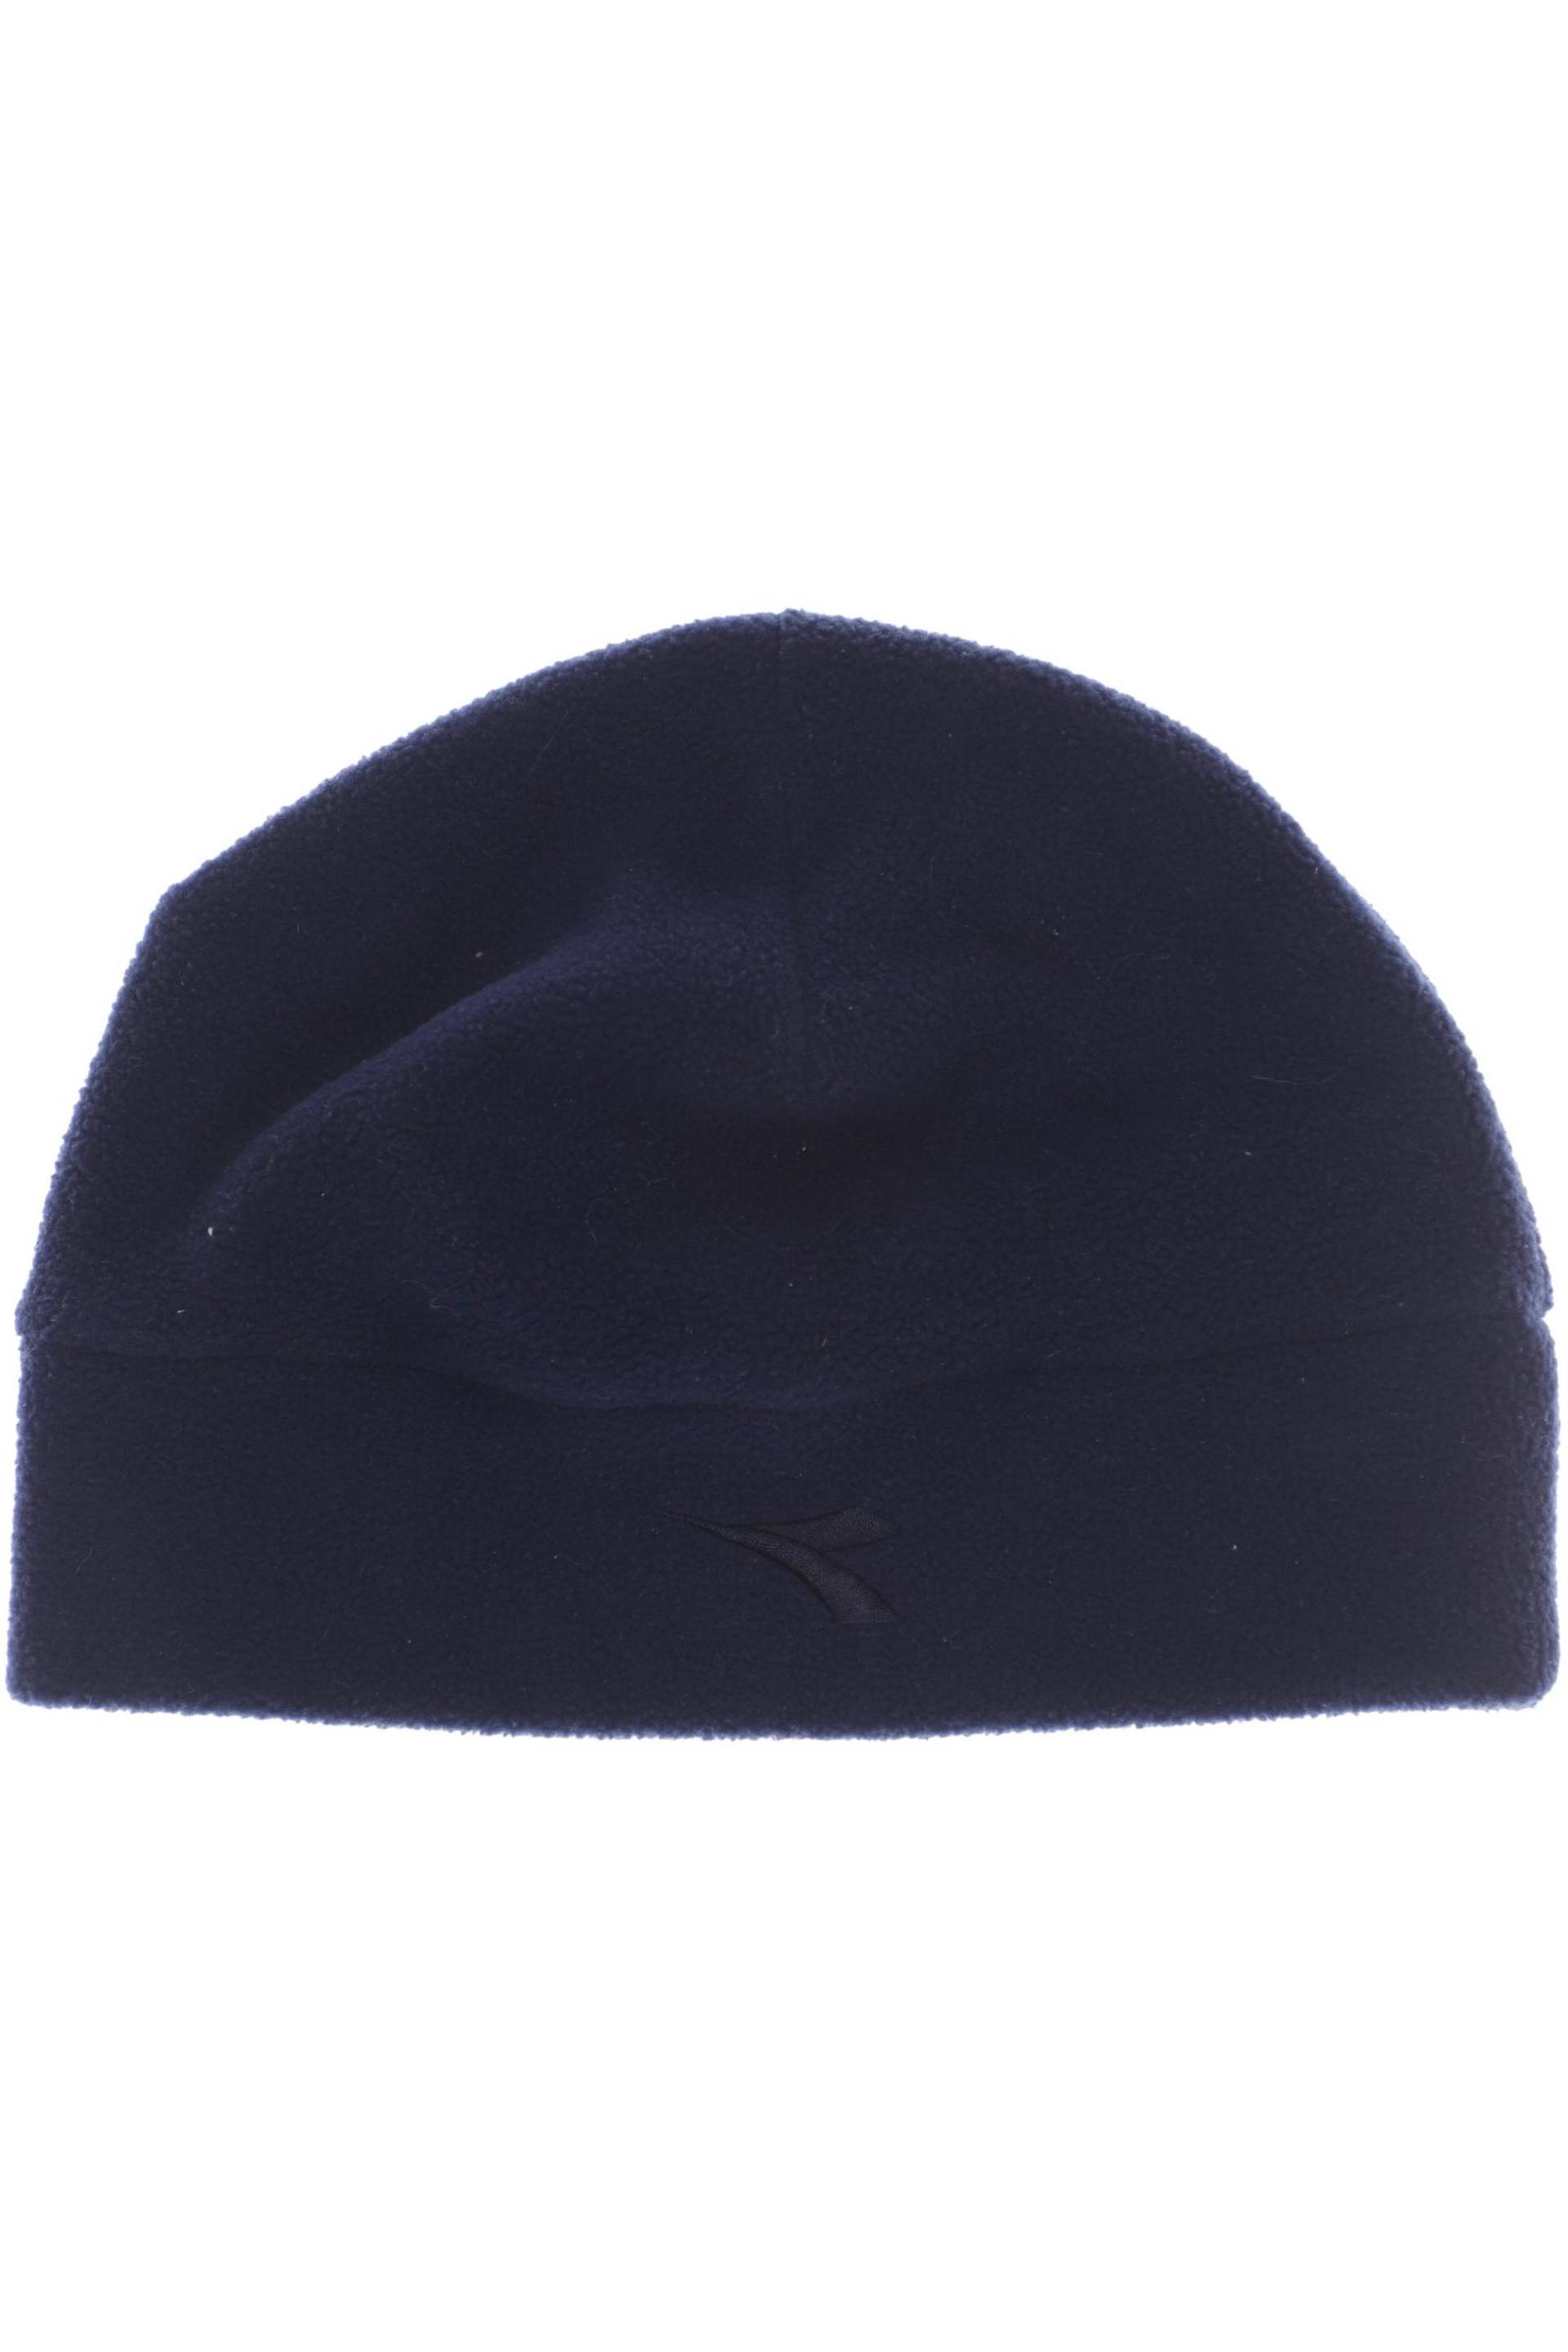 Diadora Herren Hut/Mütze, marineblau von Diadora